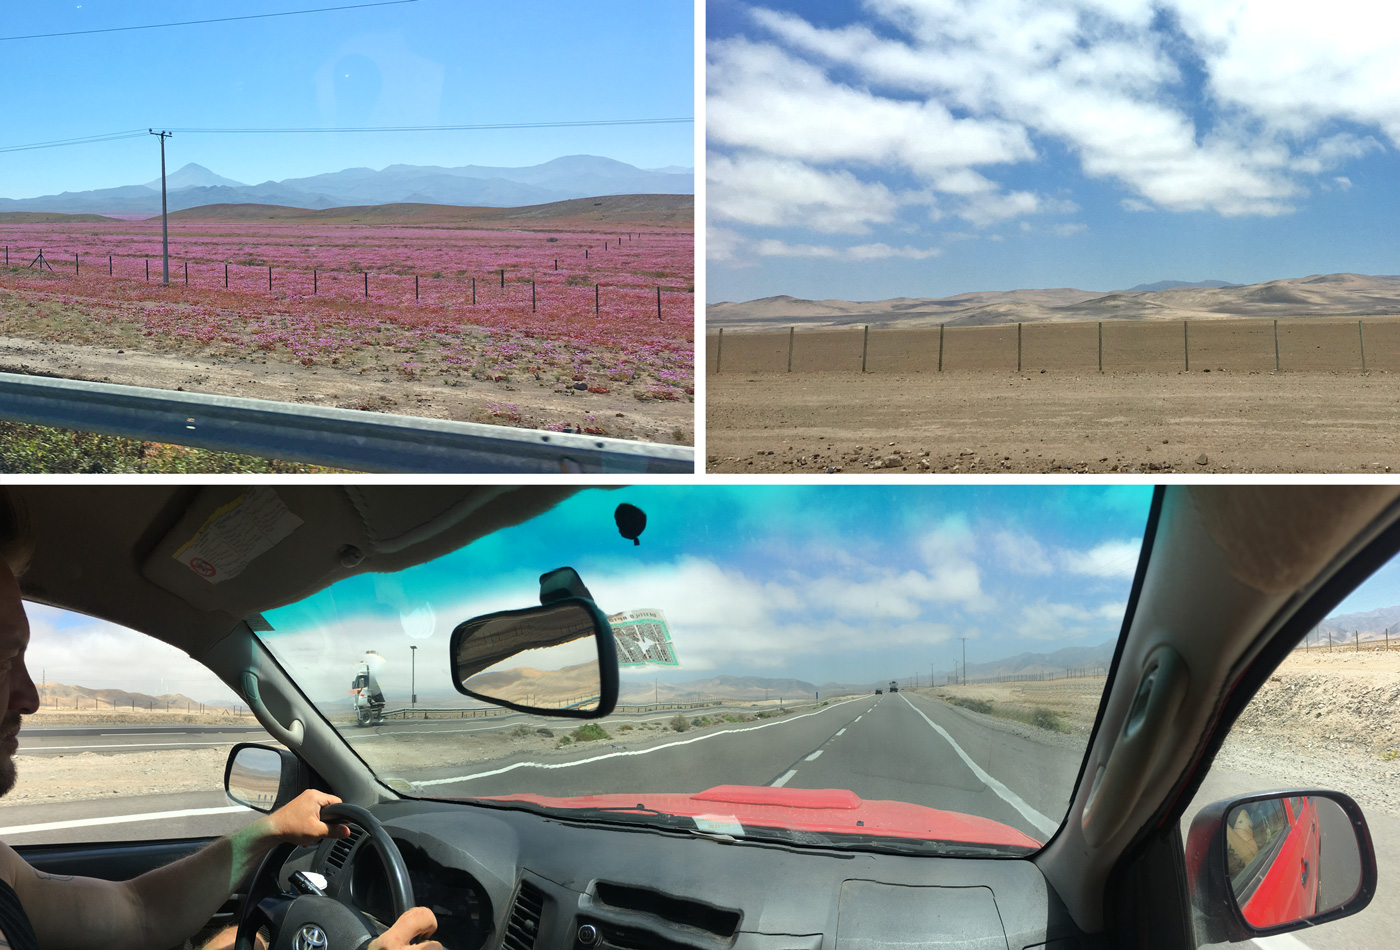 Kārotais Atakamas tuksnesis ir tiešām sasodīti skaists – Čīle